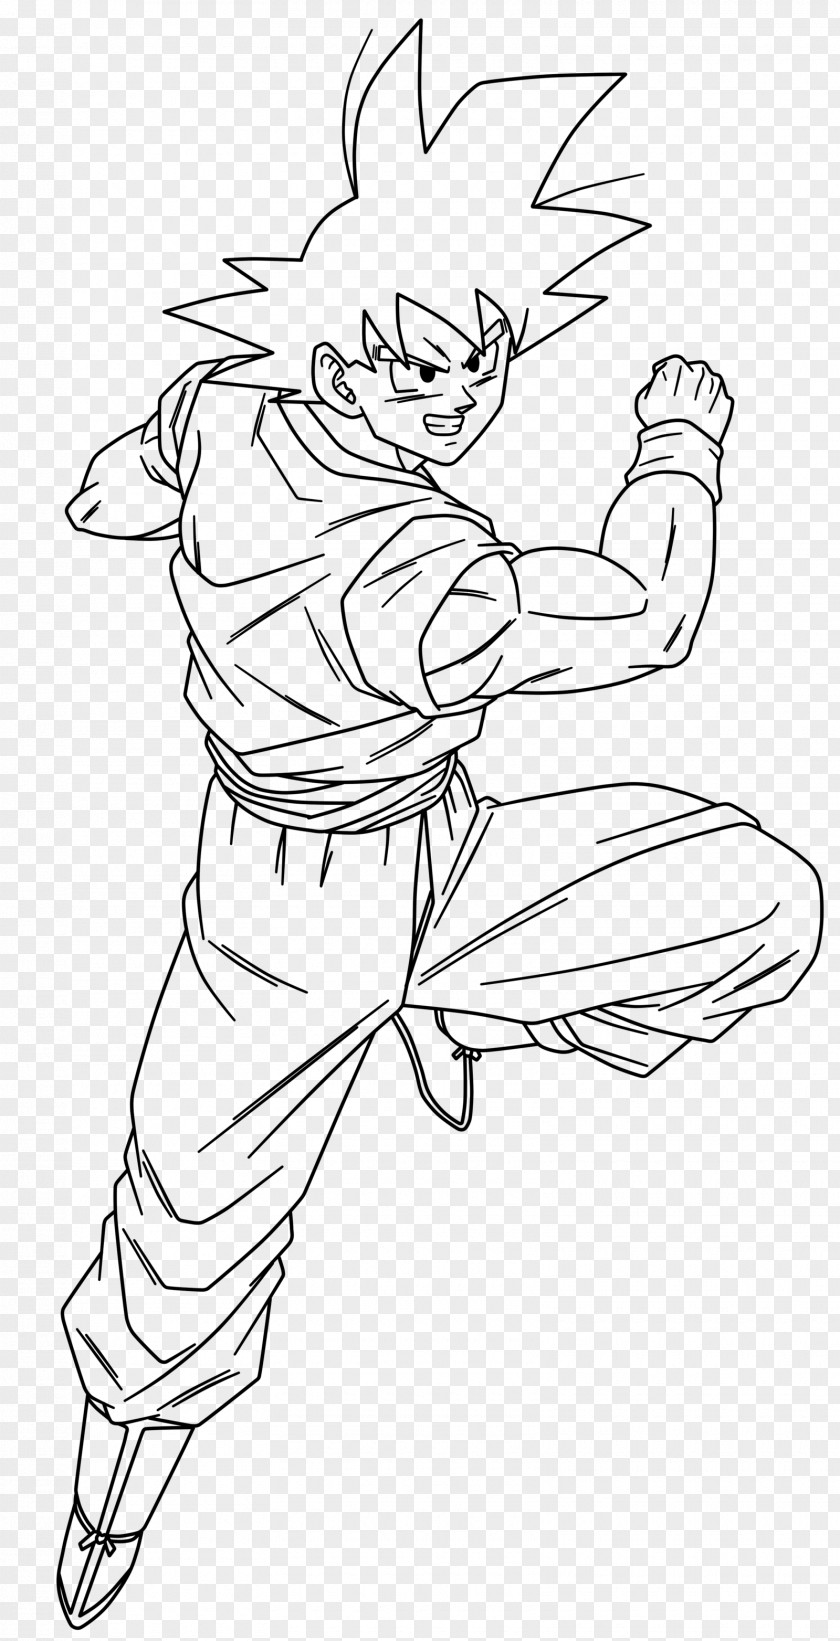 Goku Head Line Art Drawing DeviantArt PNG